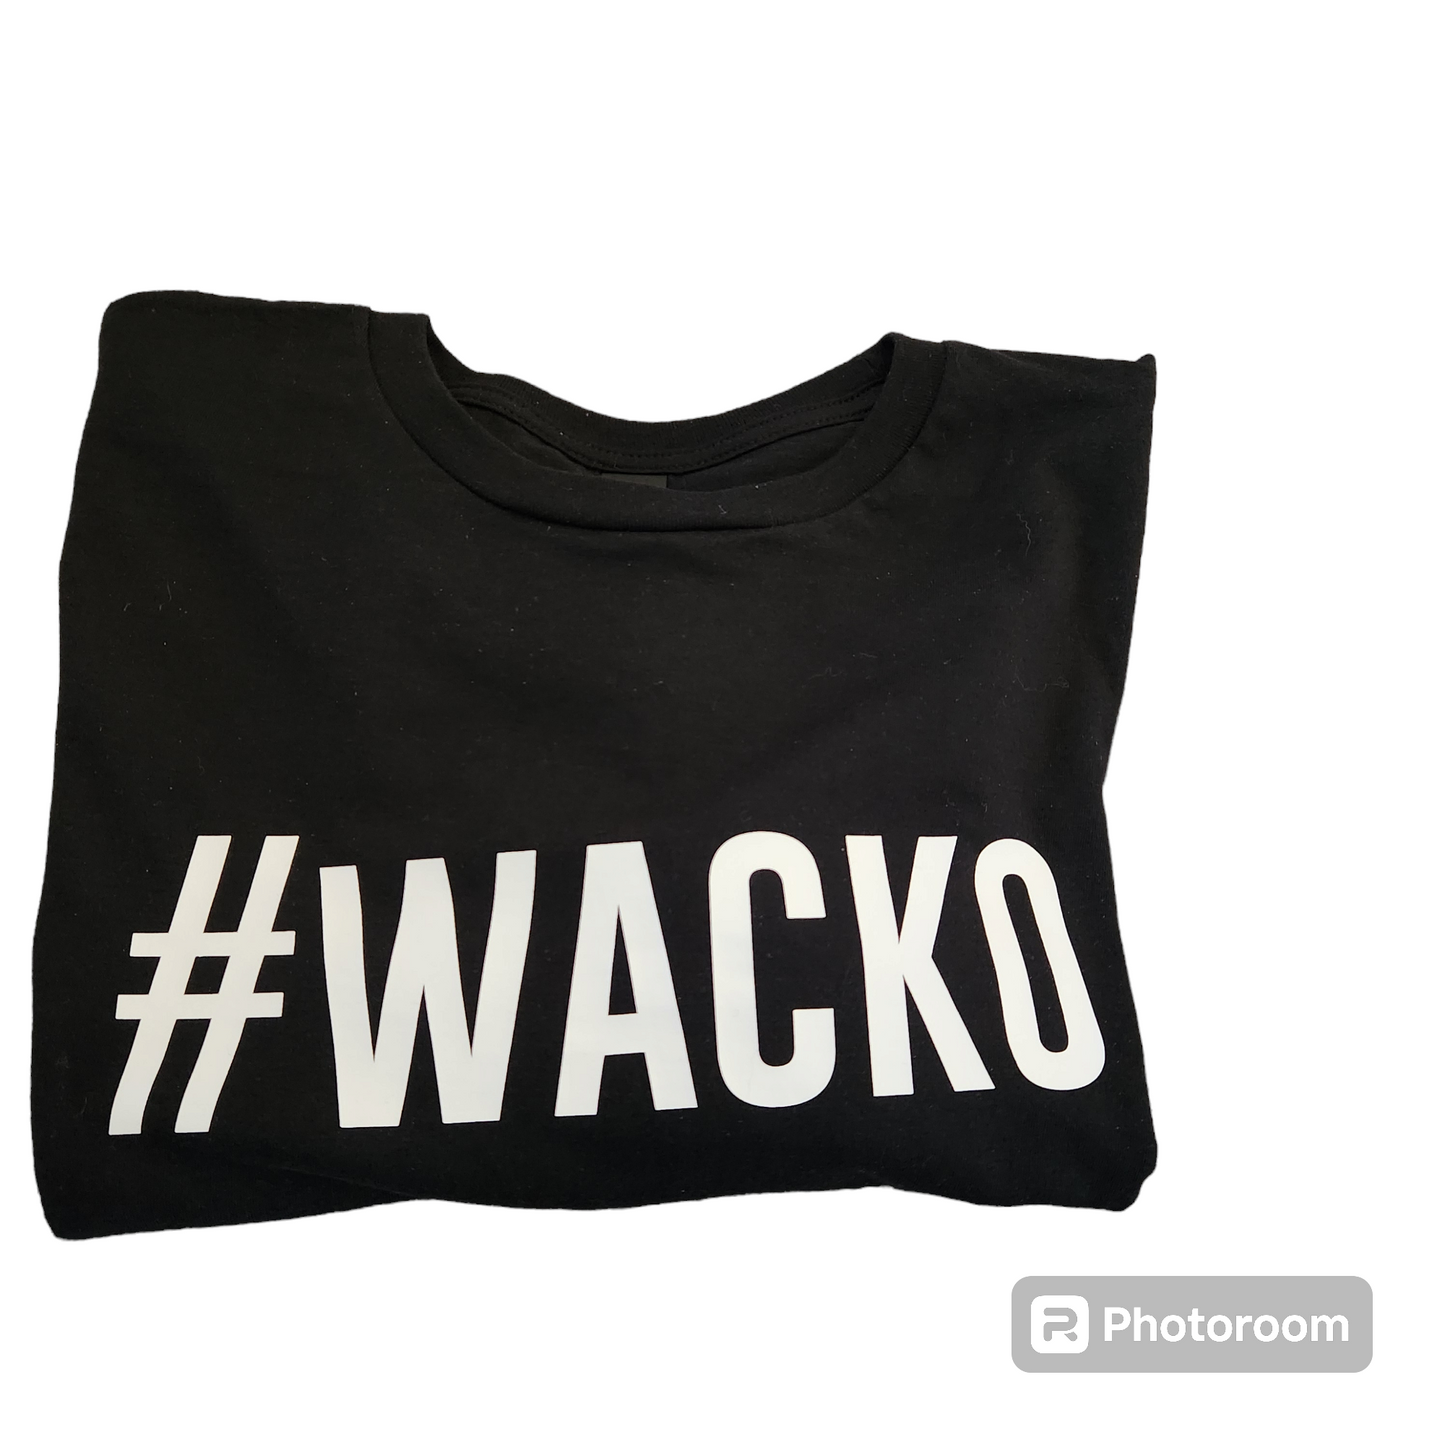 #WACKO Short Sleeve Tee